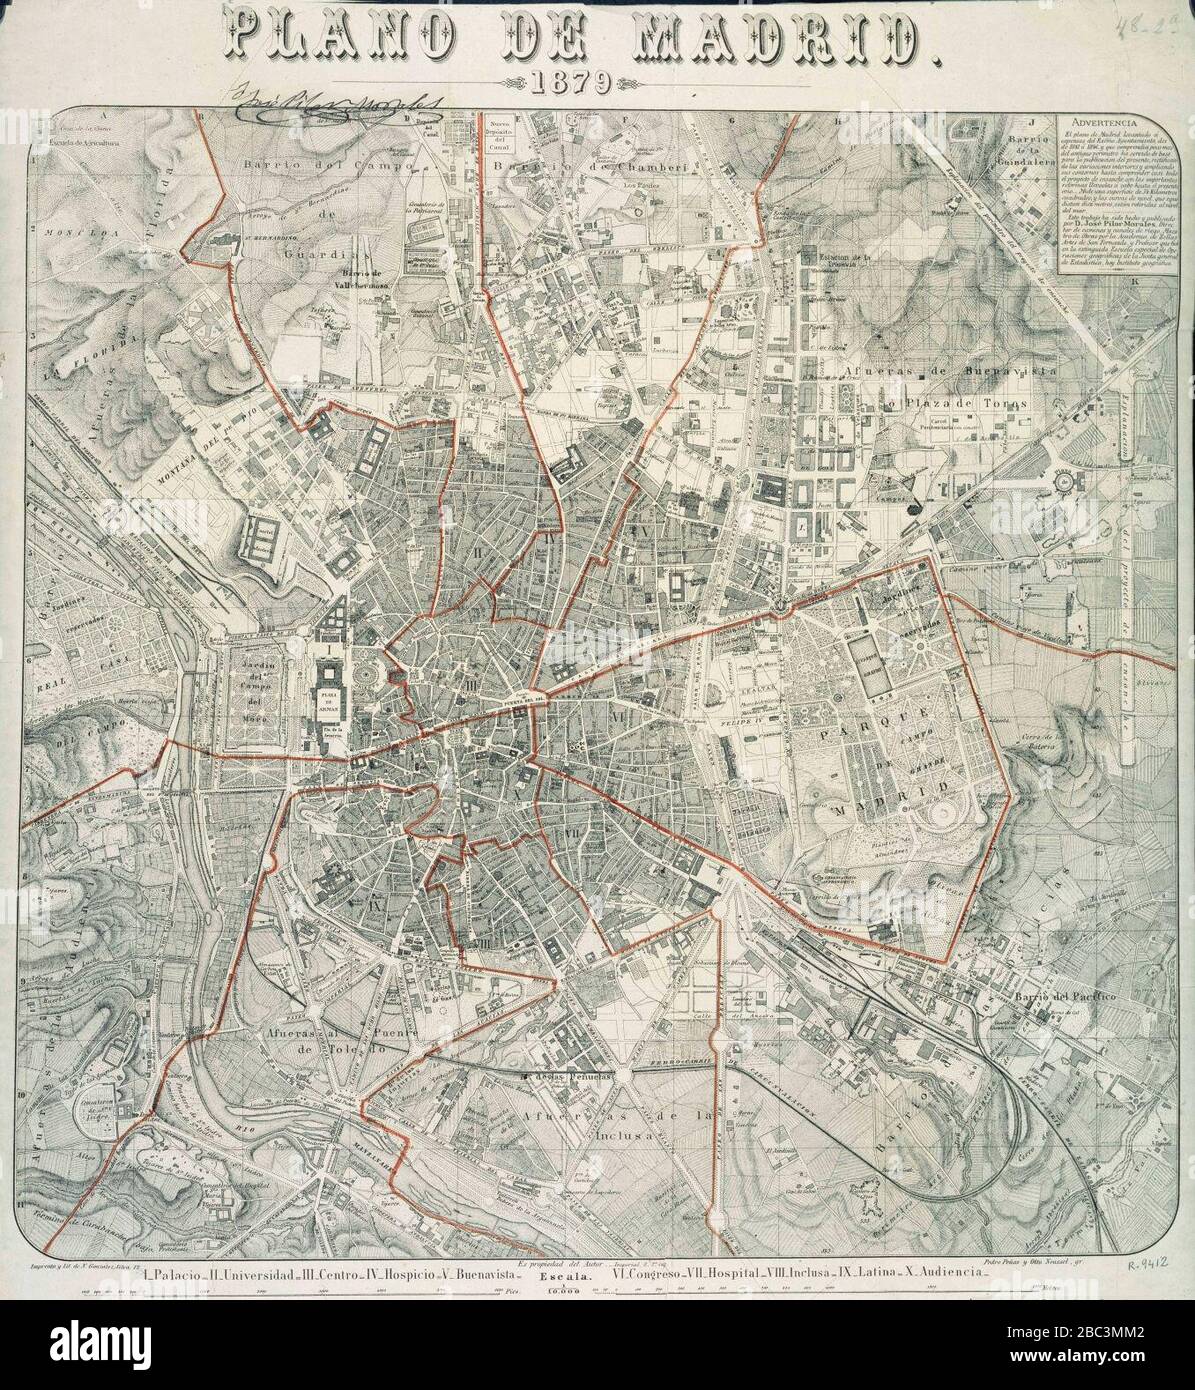 Guia del plano de Madrid y sus contornos en 1877 Stock Photo - Alamy